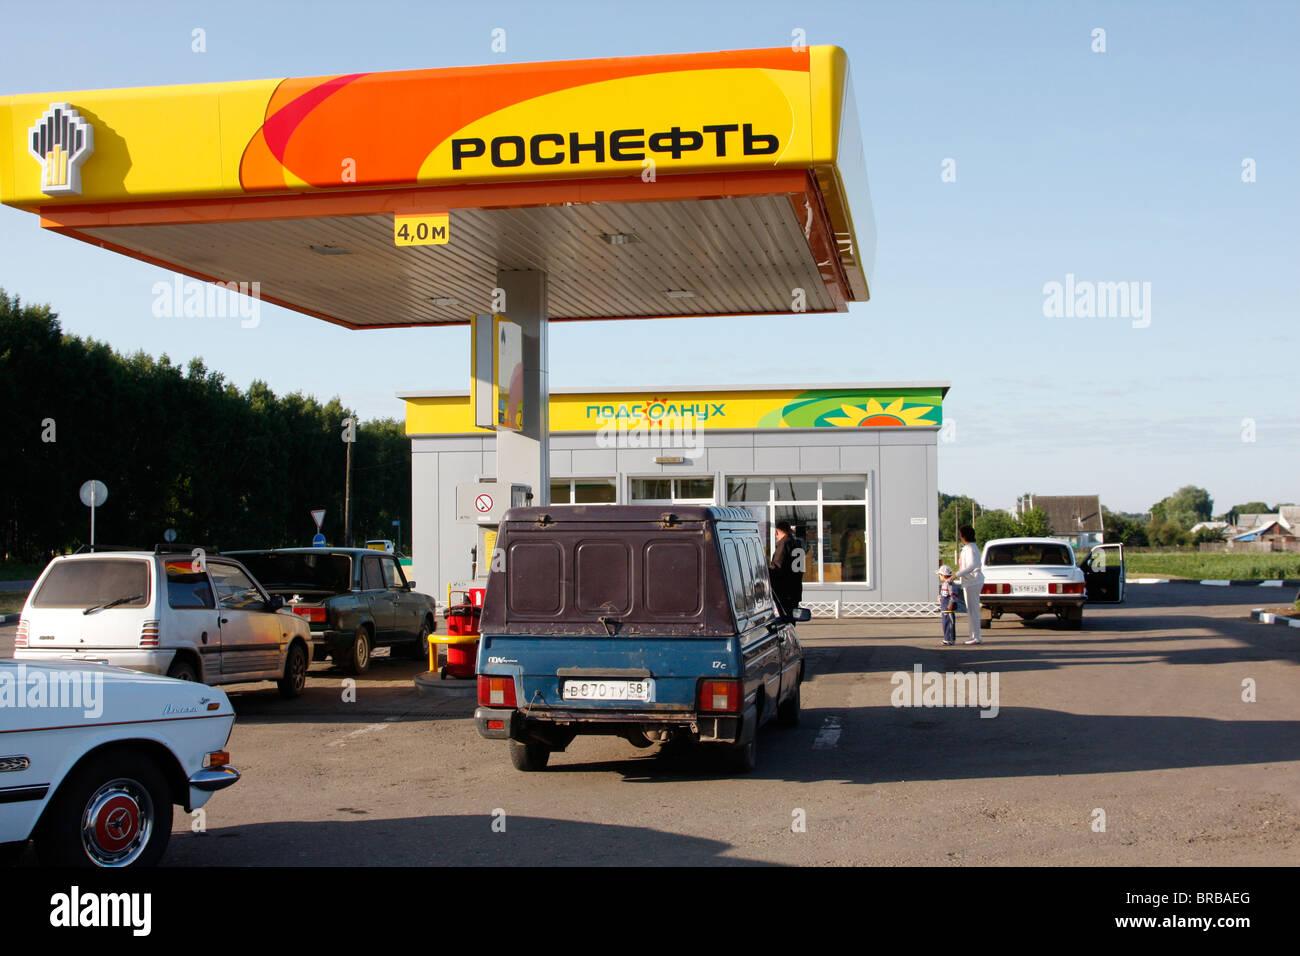 Russlands staatseigenes, vertikal integriertes Rosneft entwickelt Einzelhandelsgeschäfte in vielen Regionen Russlands. Hier ist eine Tankstelle in der Region Penza abgebildet Stockfoto